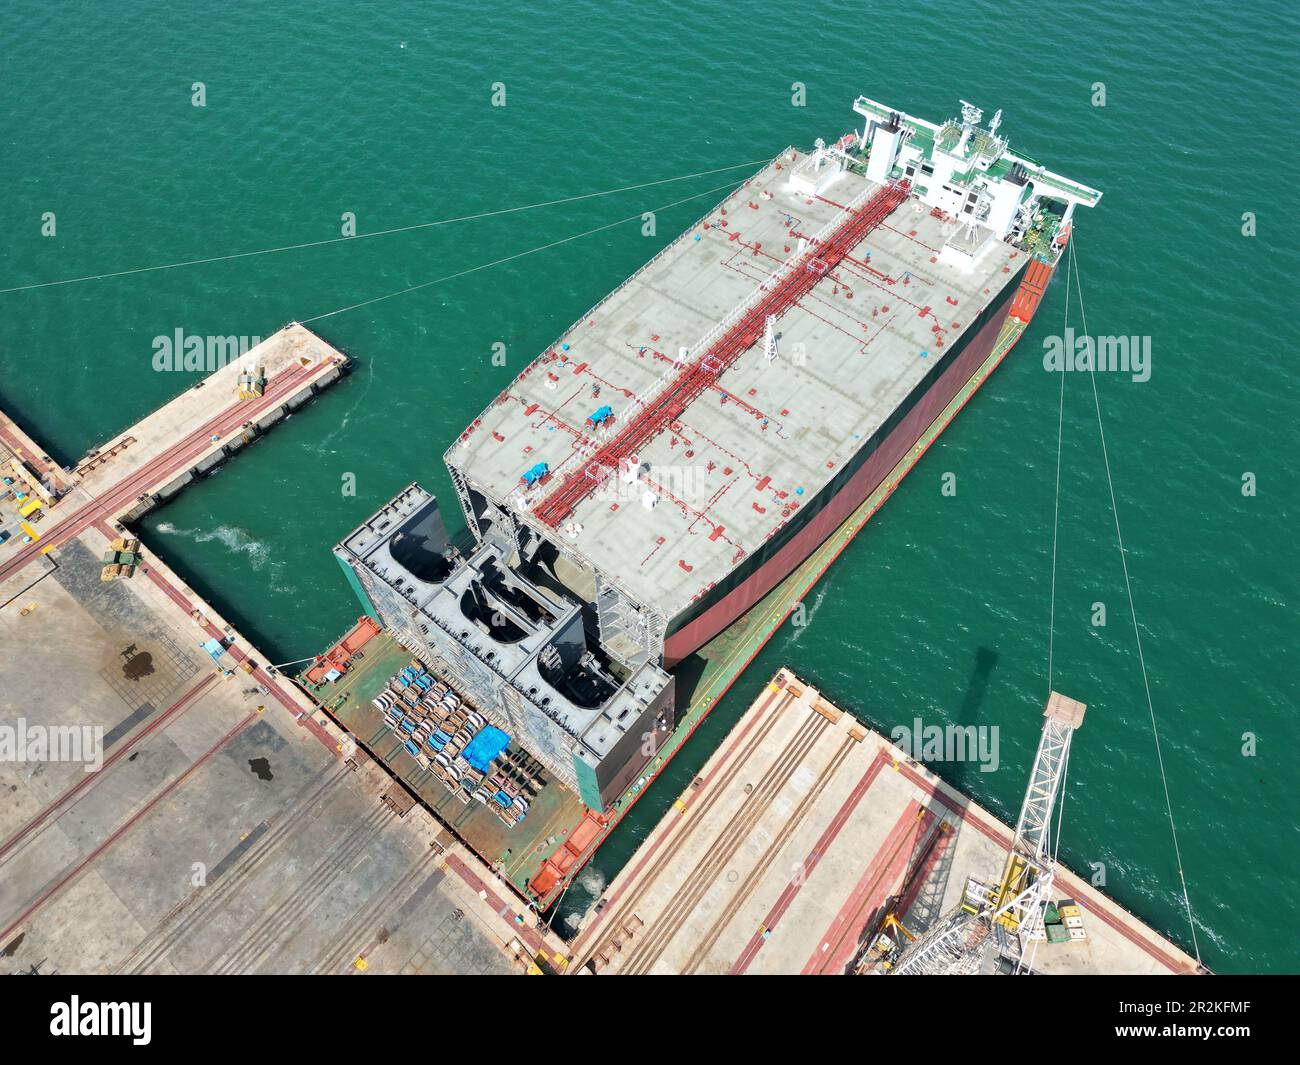 YANTAI, CHINA - 19. MAI 2023 - Ein halb-U-Boot-Schwertransportschiff, das mit Teilen großer Öltanker beladen ist, bereitet sich darauf vor, die Segel eines Schiffes zu setzen Stockfoto